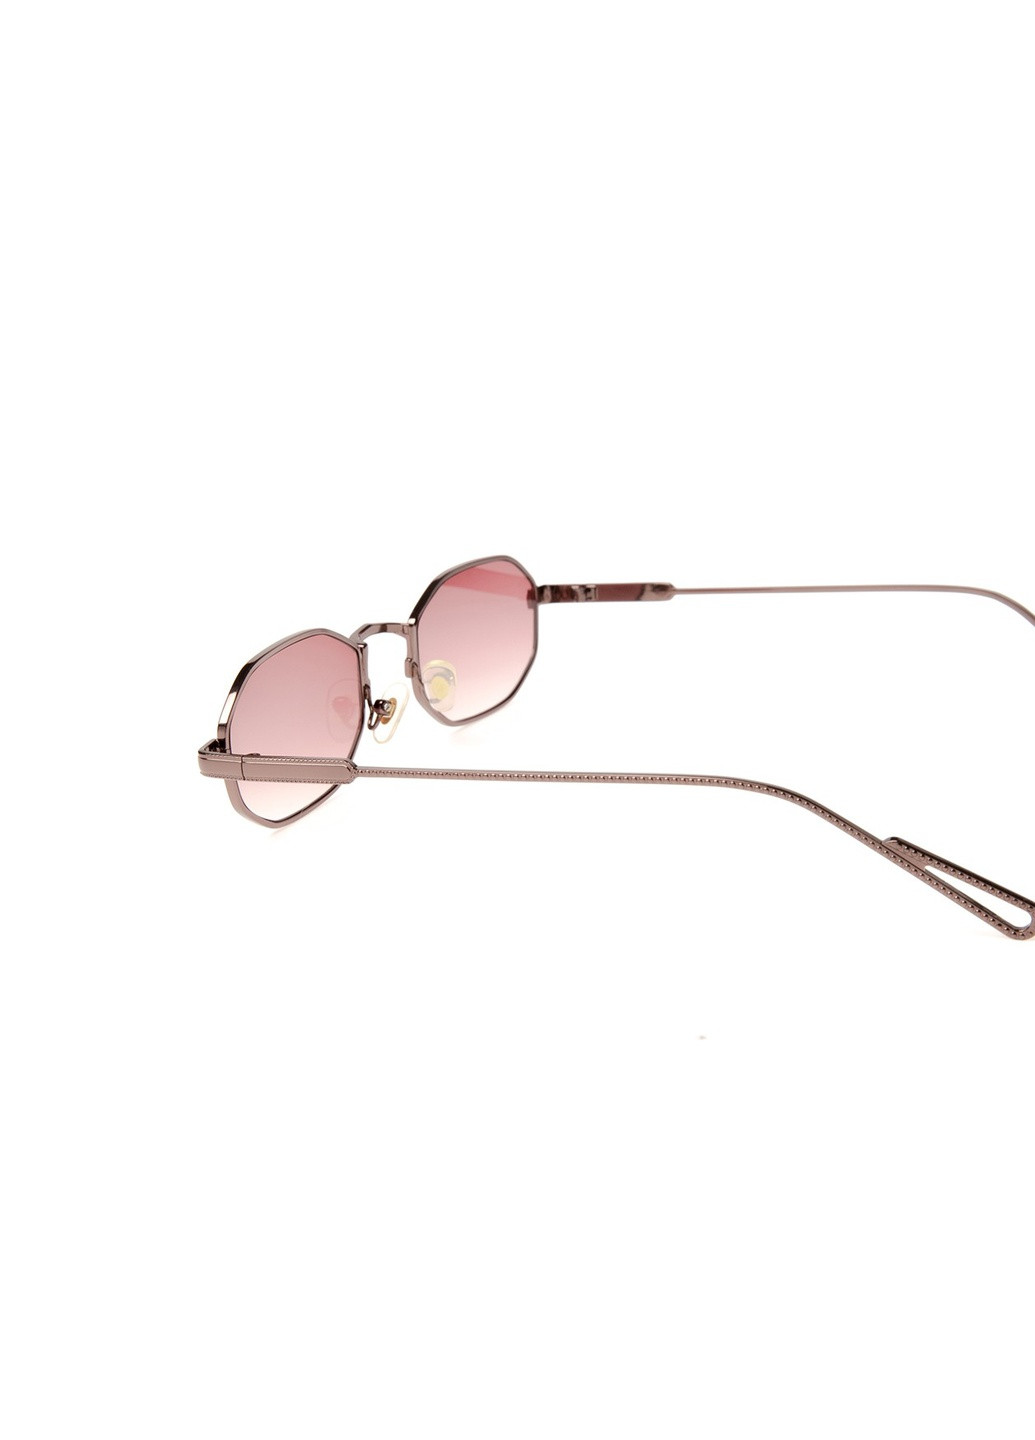 Солнцезащитные очки Фэшн женские LuckyLOOK 875-884 (257607889)